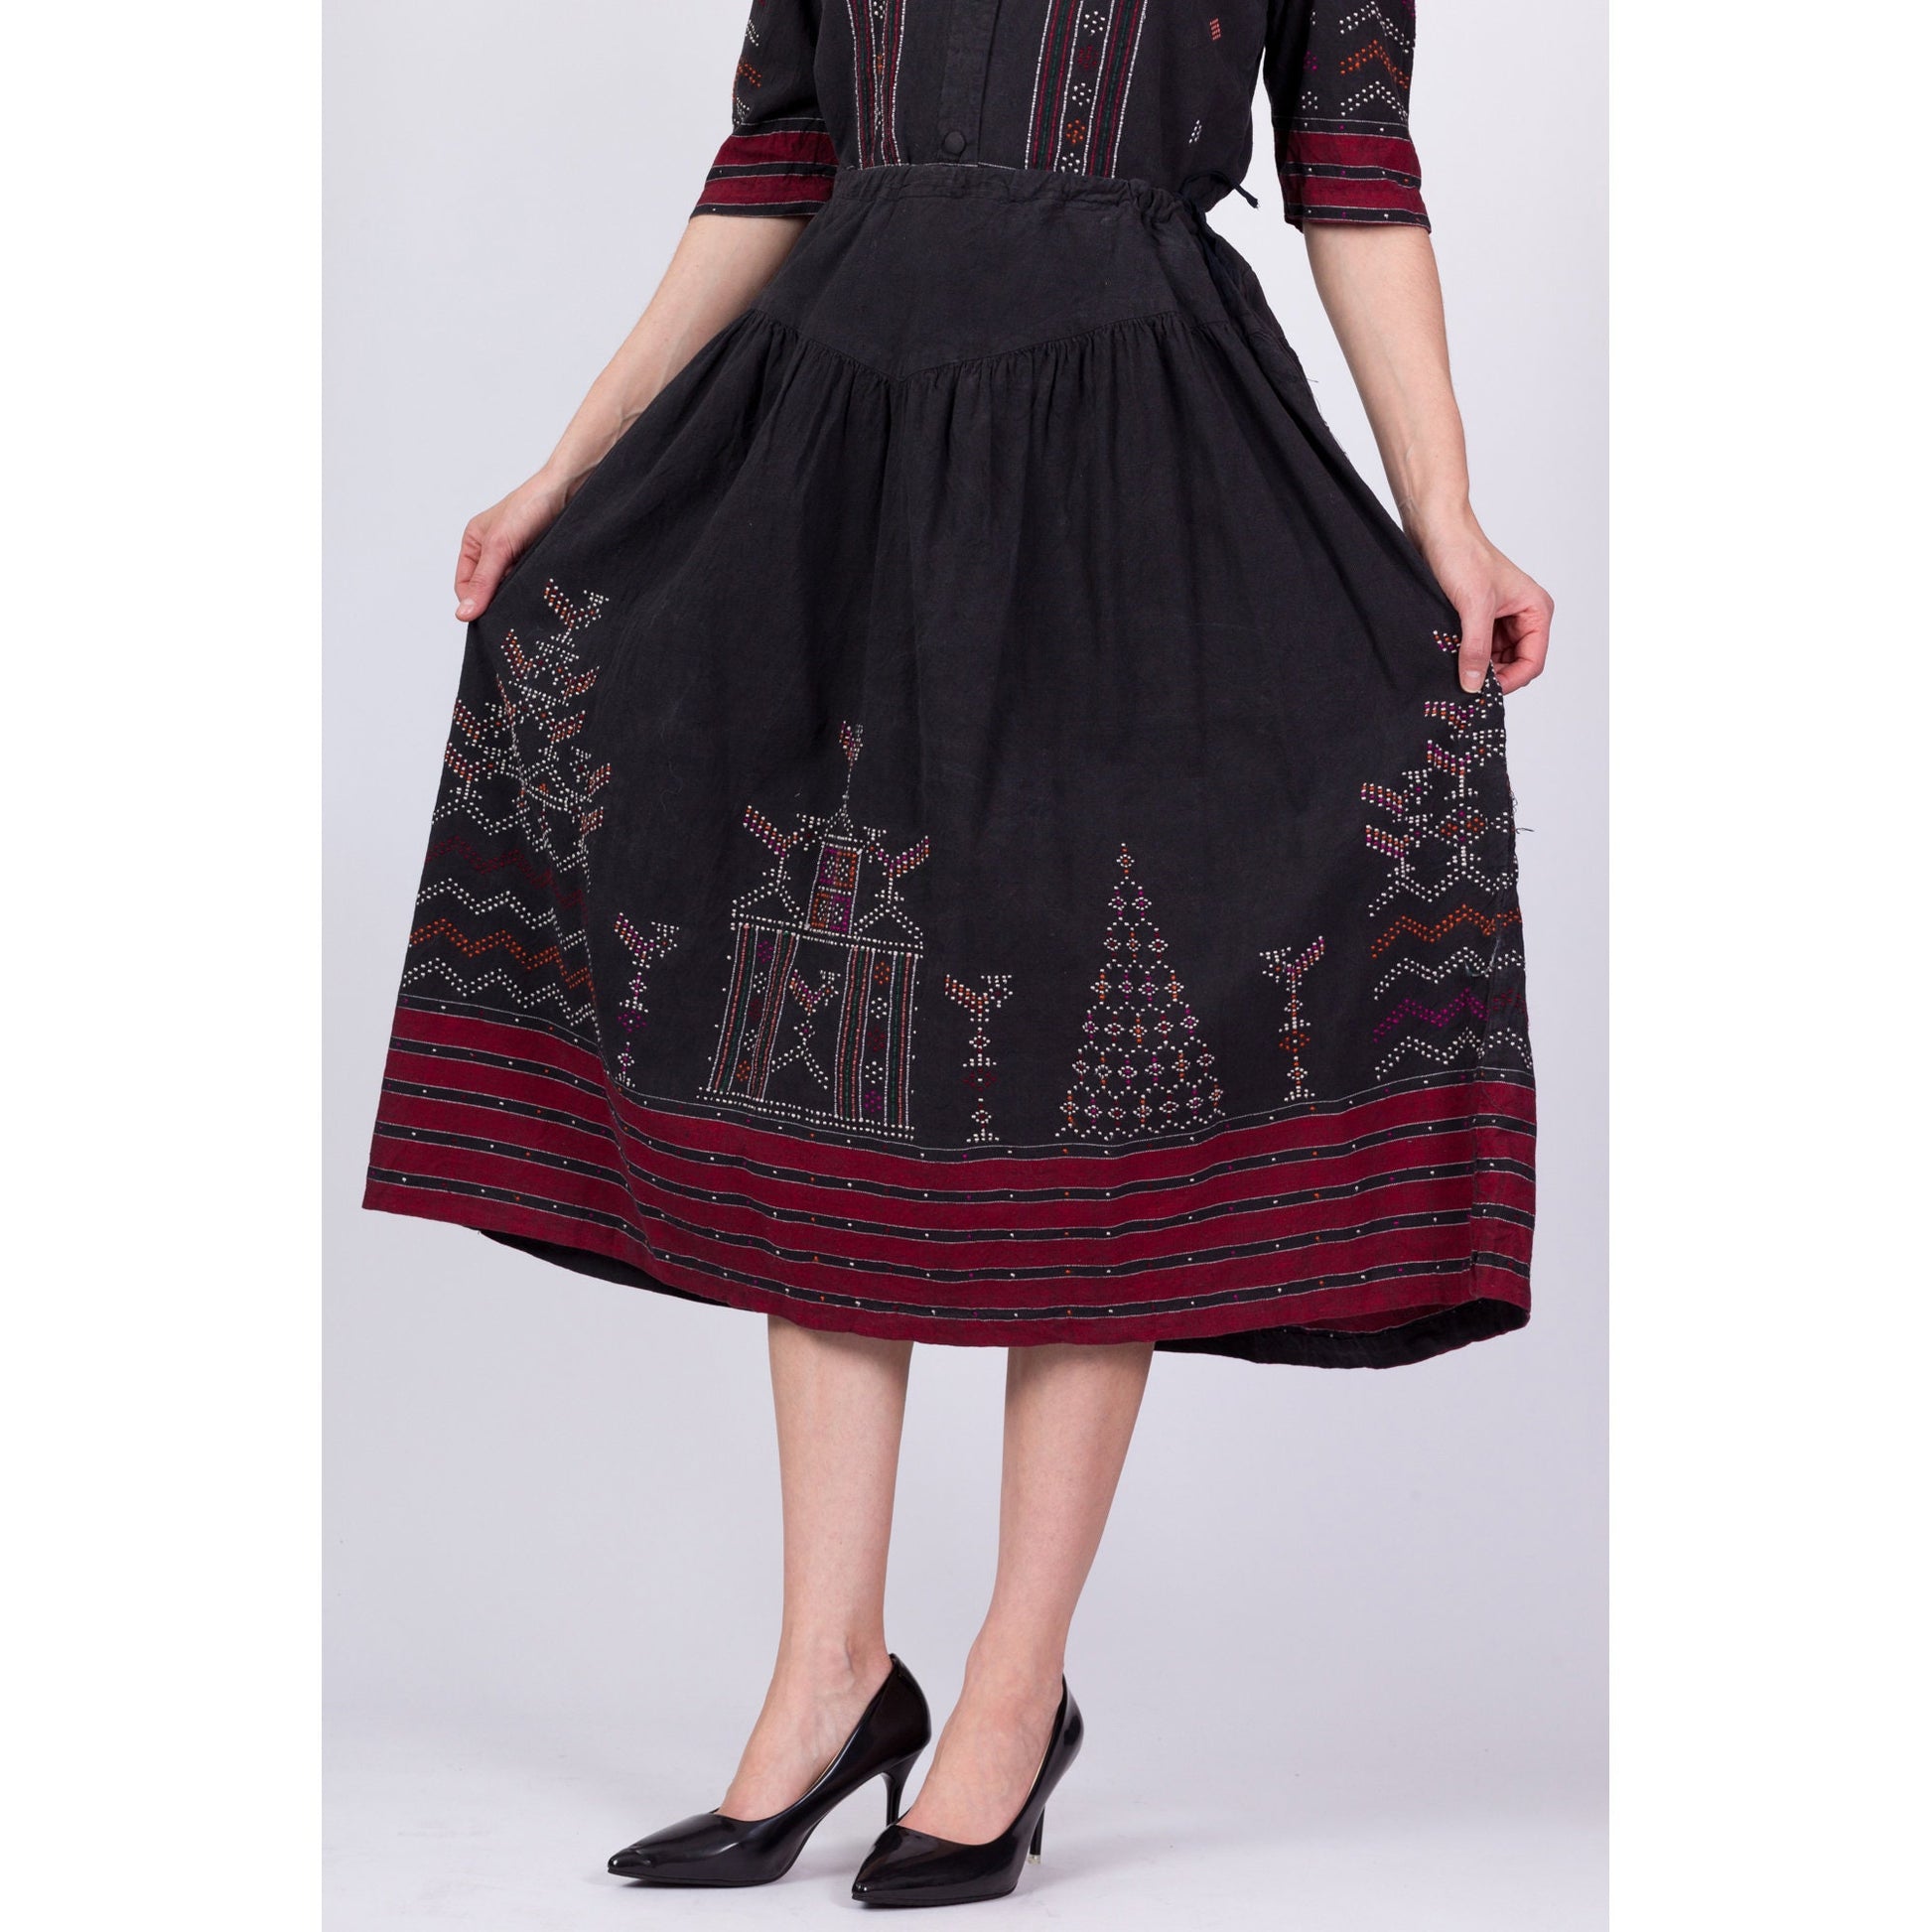 Vintage Eastern European Embroidered Folk Skirt Set - Small to Medium 